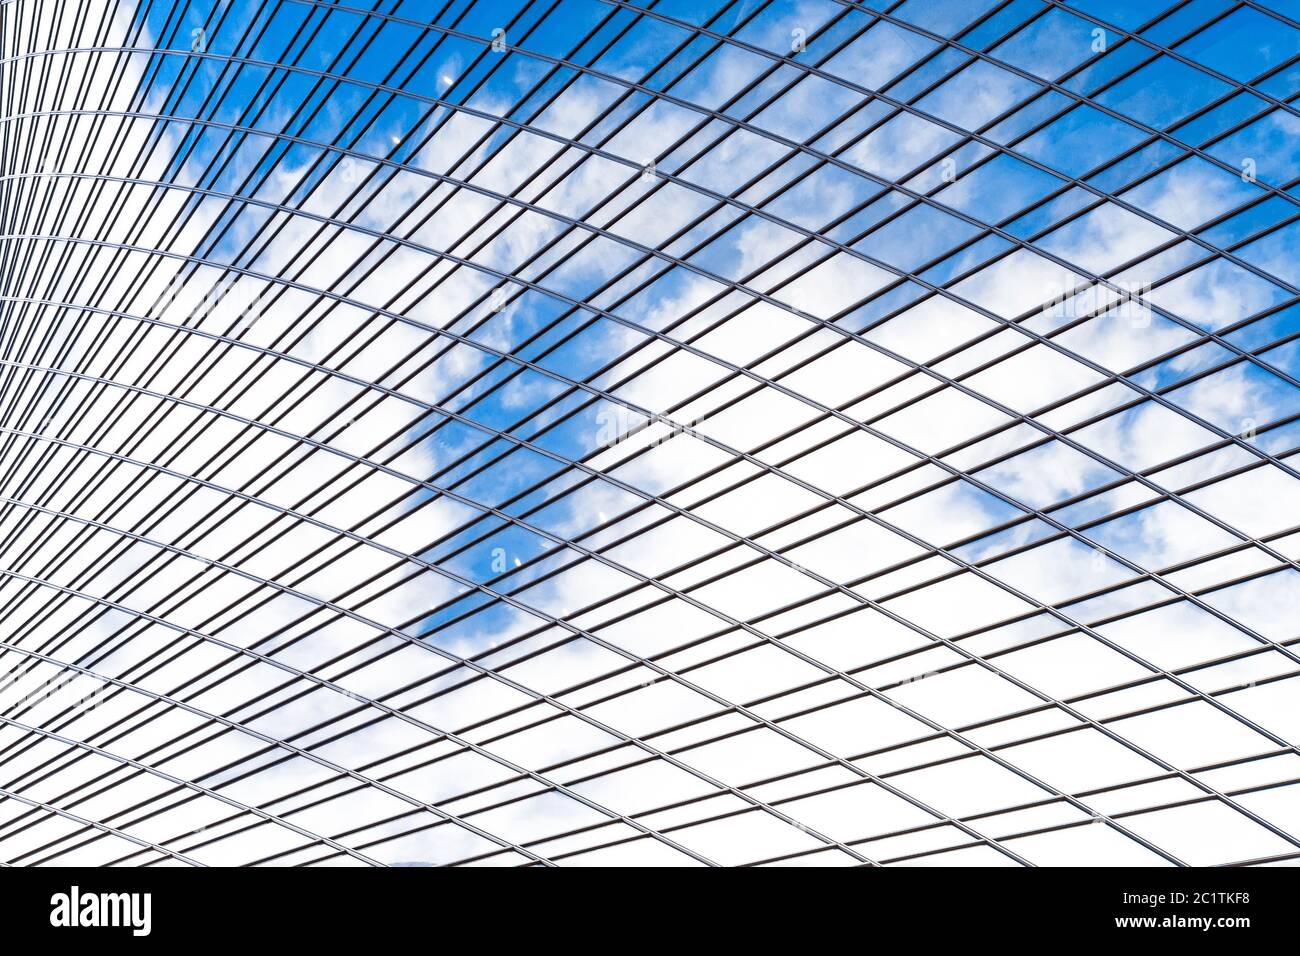 Spiegelung des Himmels und Wolken in Glas Spirale, Welle mit Biegefassade Fenster der Finanz-Wolkenkratzer Stockfoto